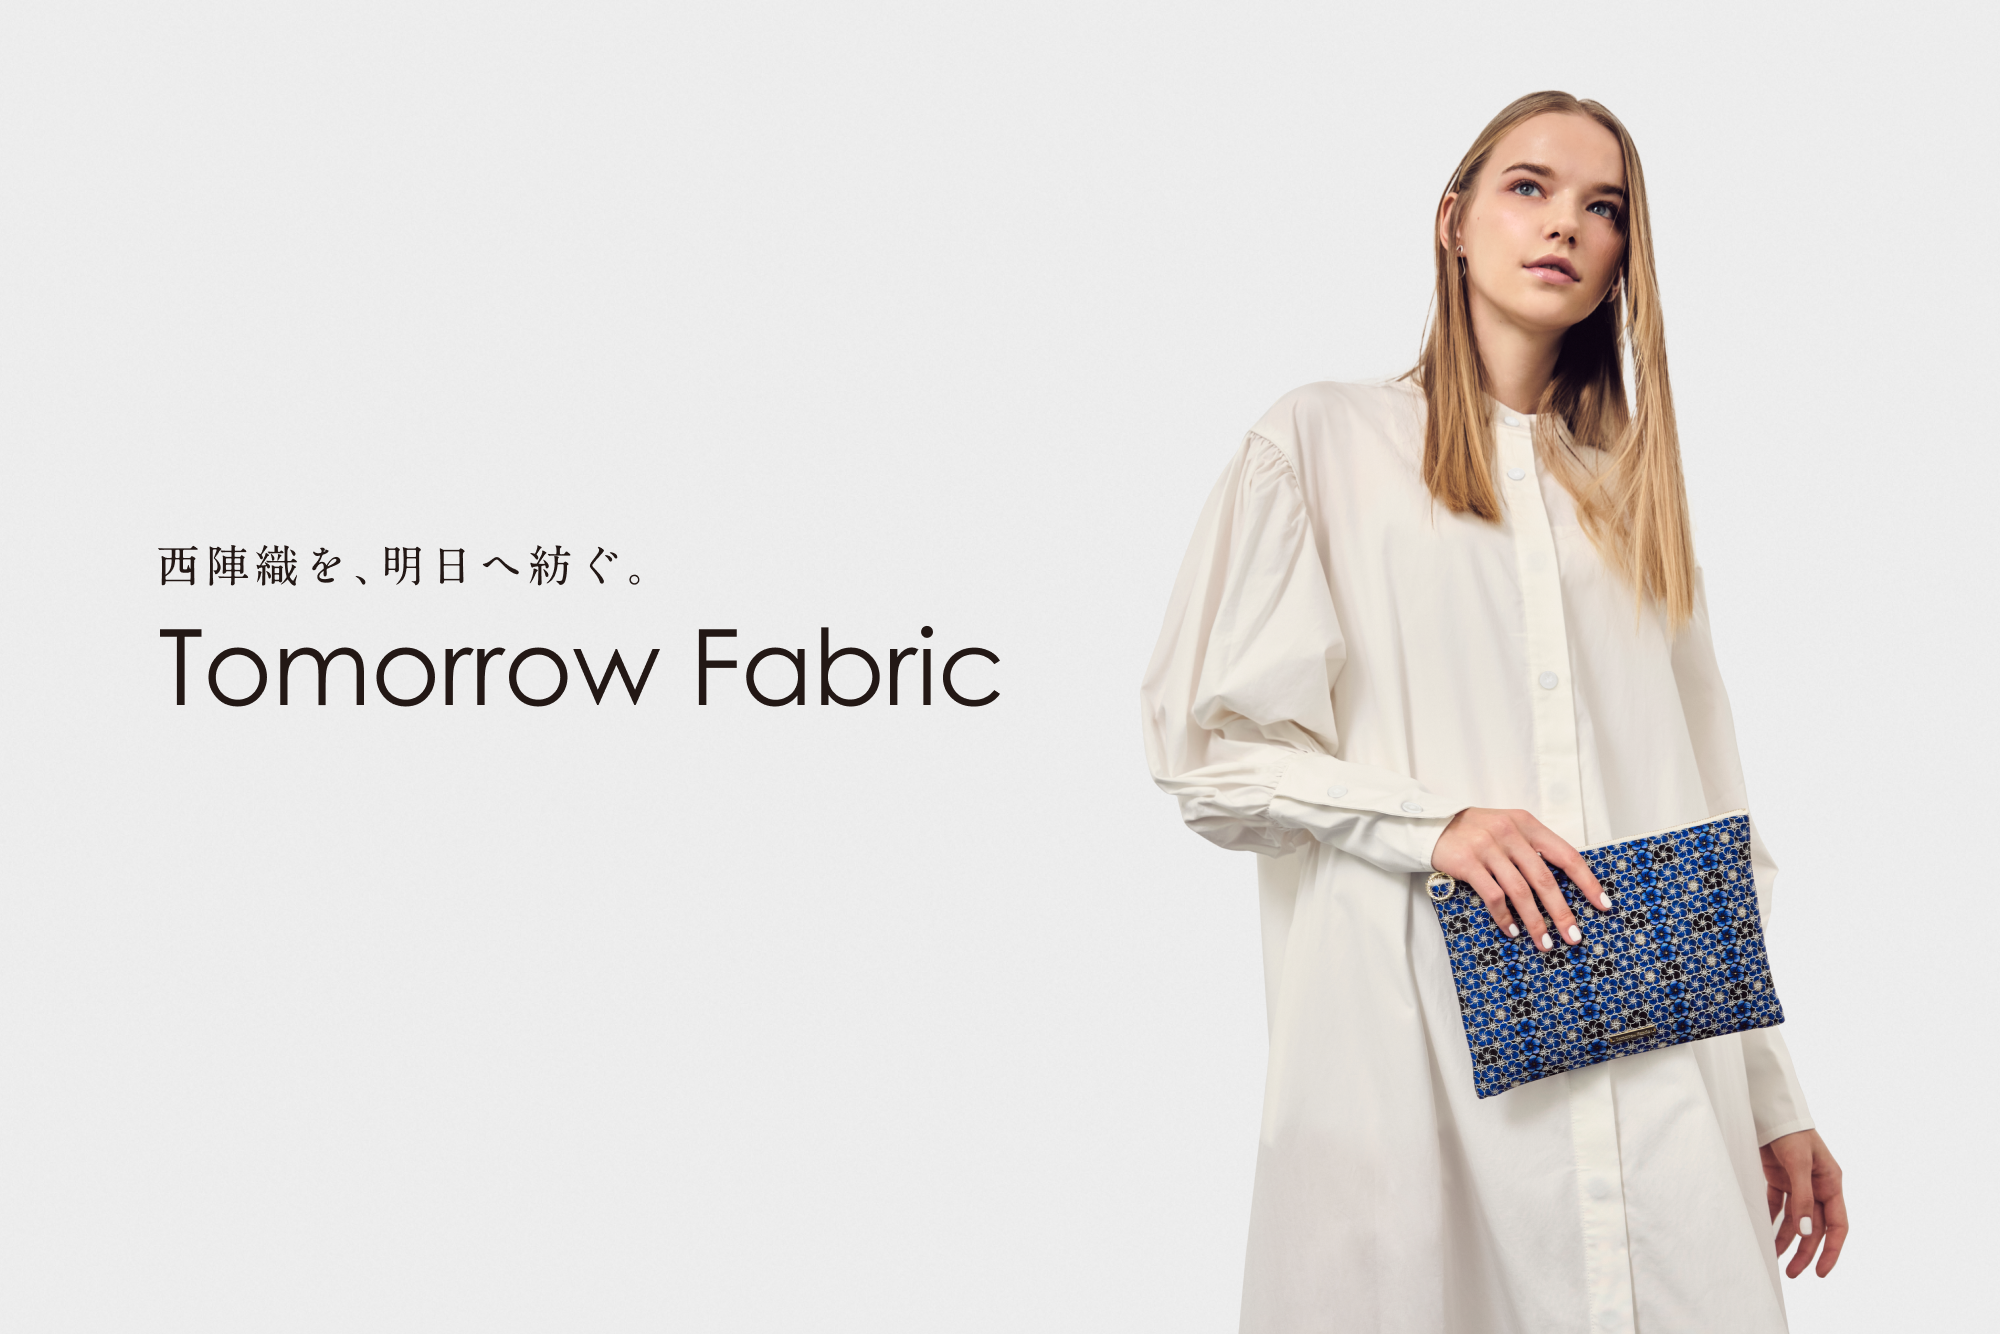 Tomorrow Fabric「西陣織ファッションブランド」へブランドリニューアル